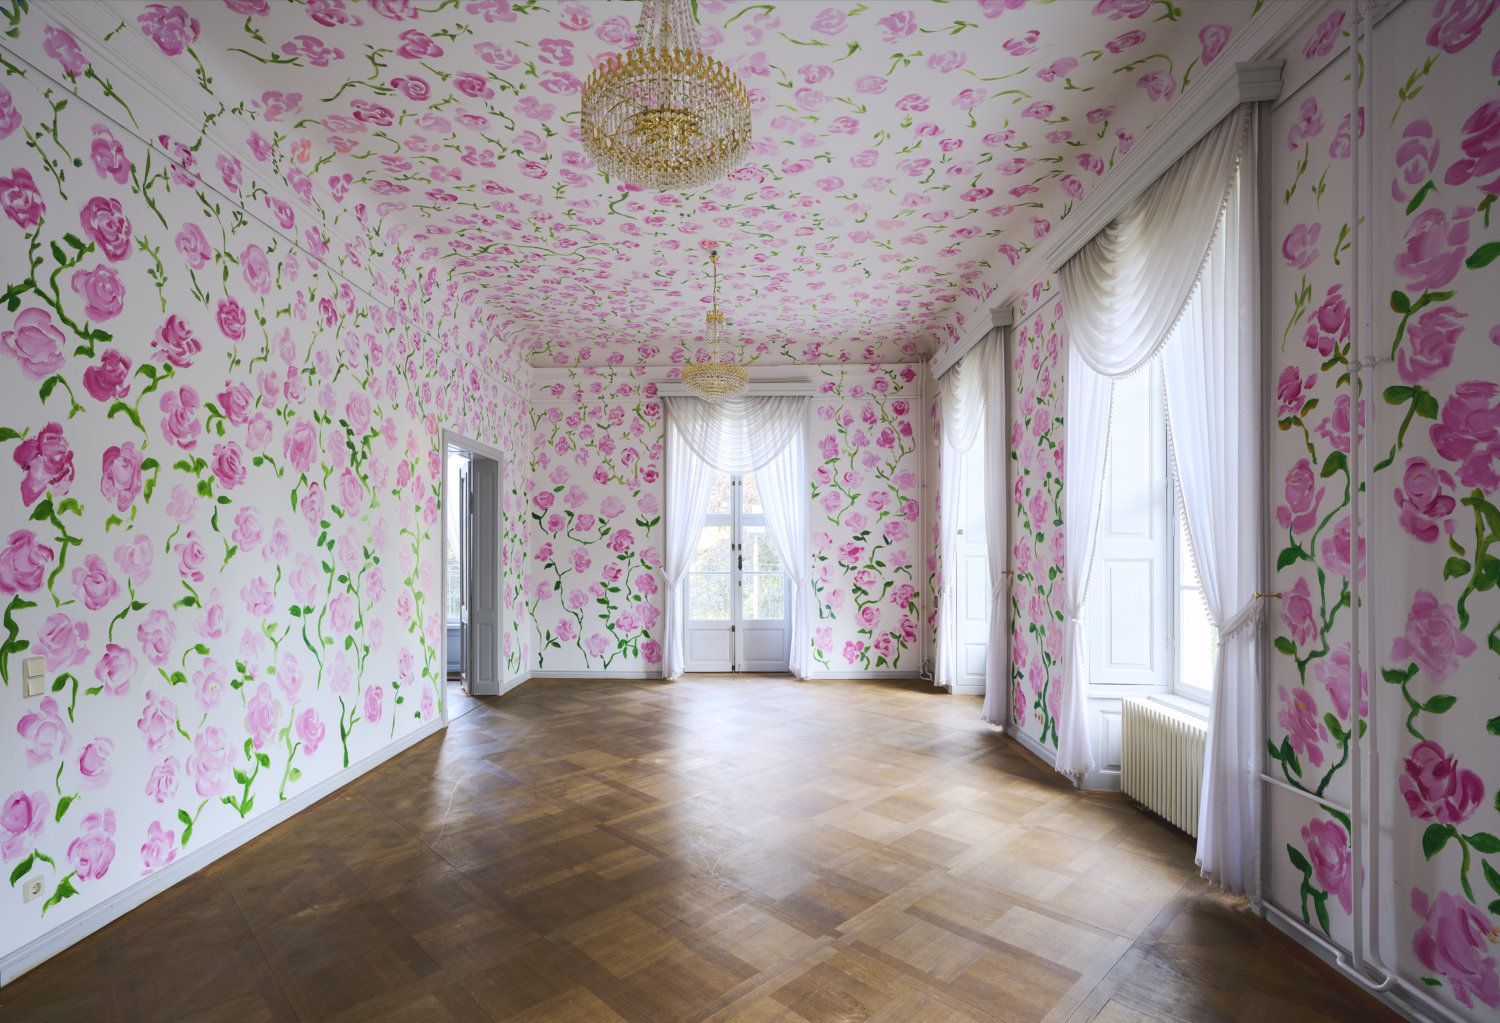 Ein leerer Raum eines Schlosses ist komplett mit Rosen bemalt, die sich über Wände und Decke ziehen.